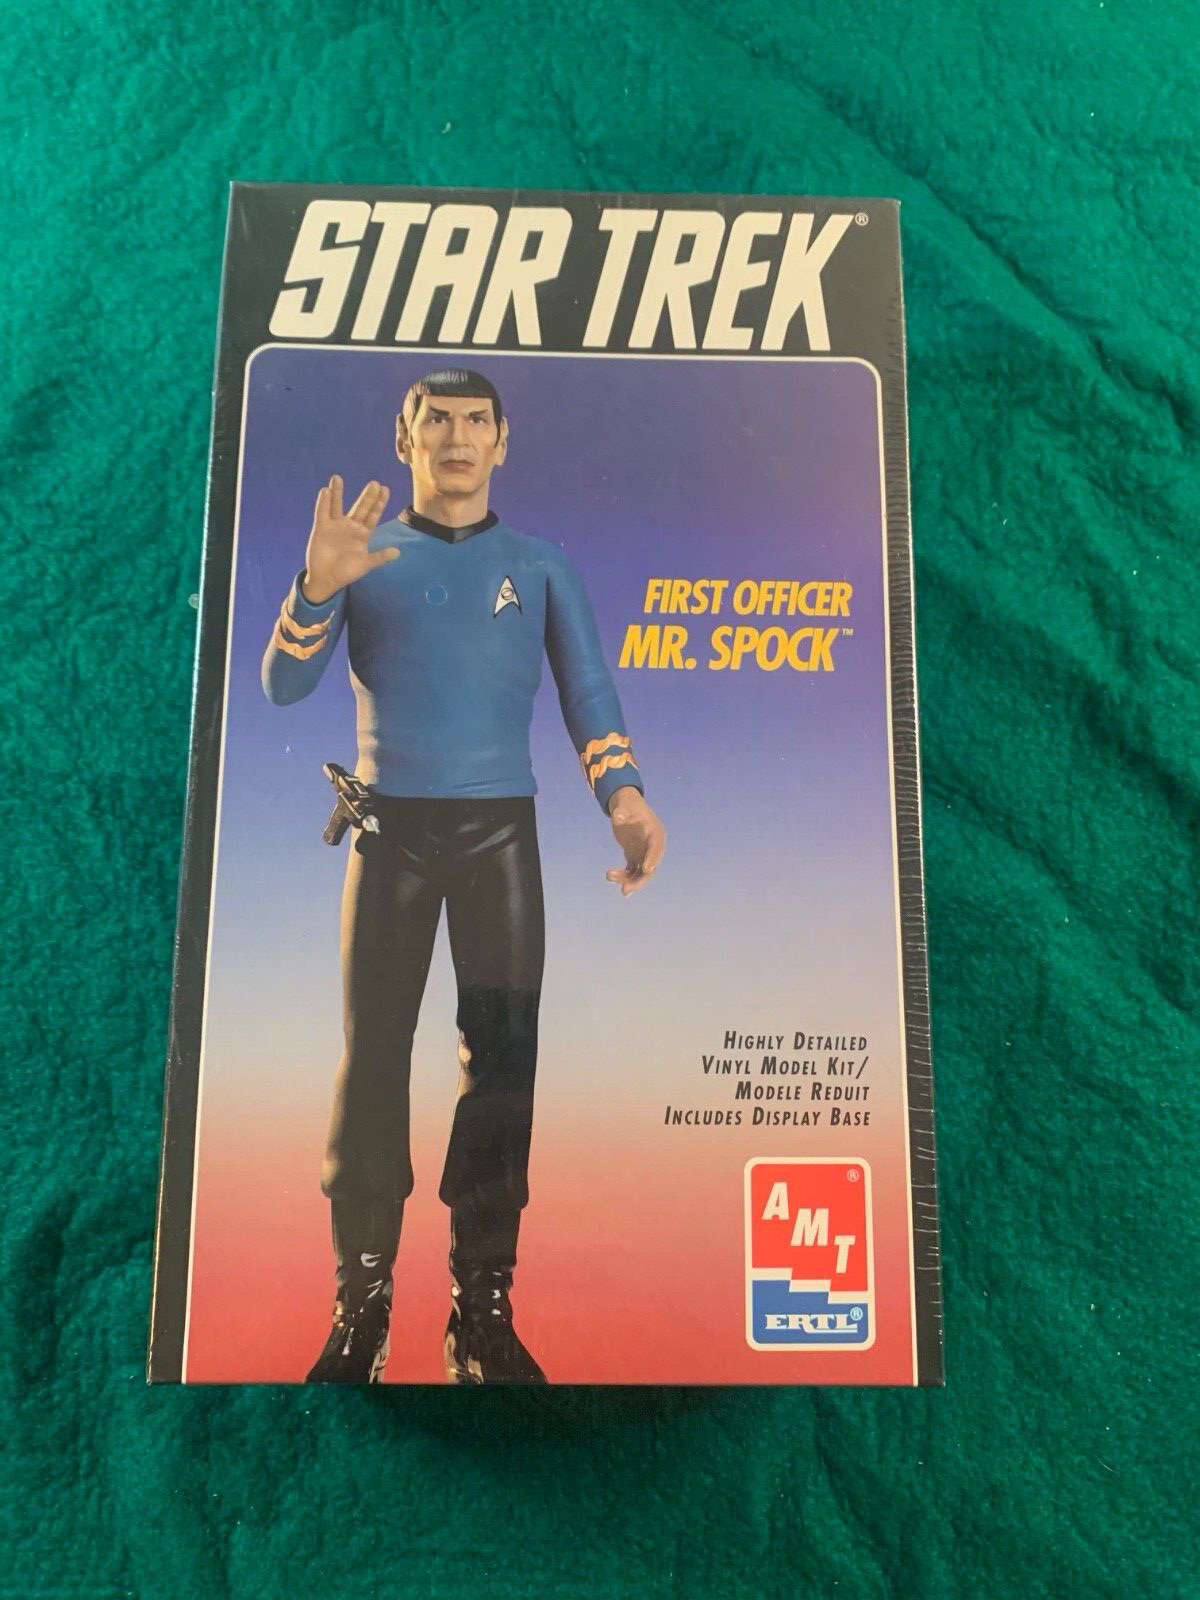 Star Trek First Officer Mr. Spock Vinyl Model Kit AMT ERTL NEW in box